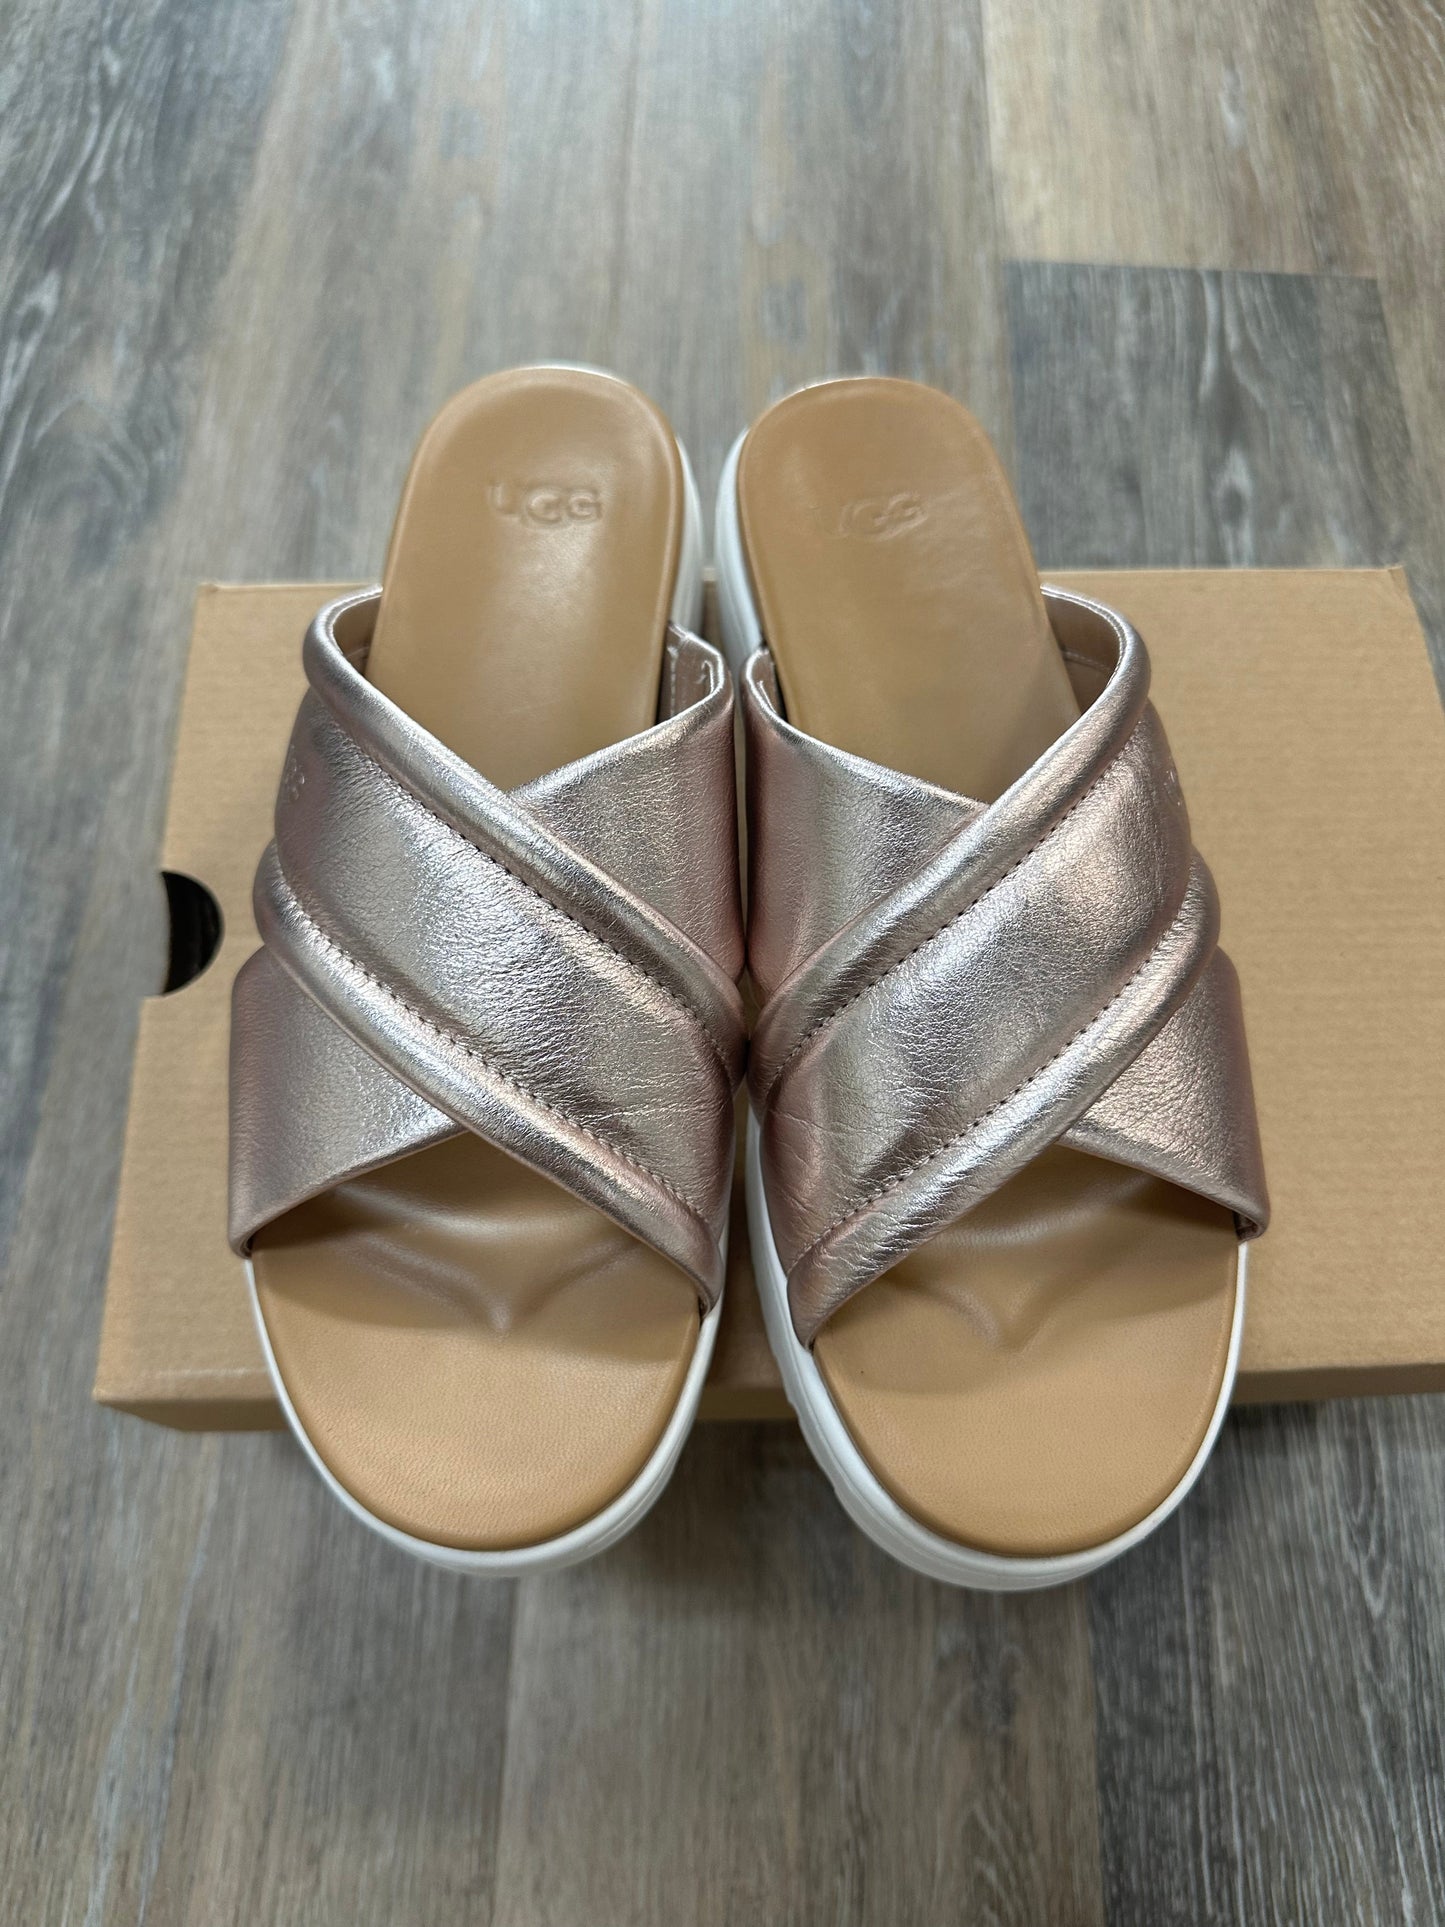 Rose Gold Sandals Flats Ugg, Size 8